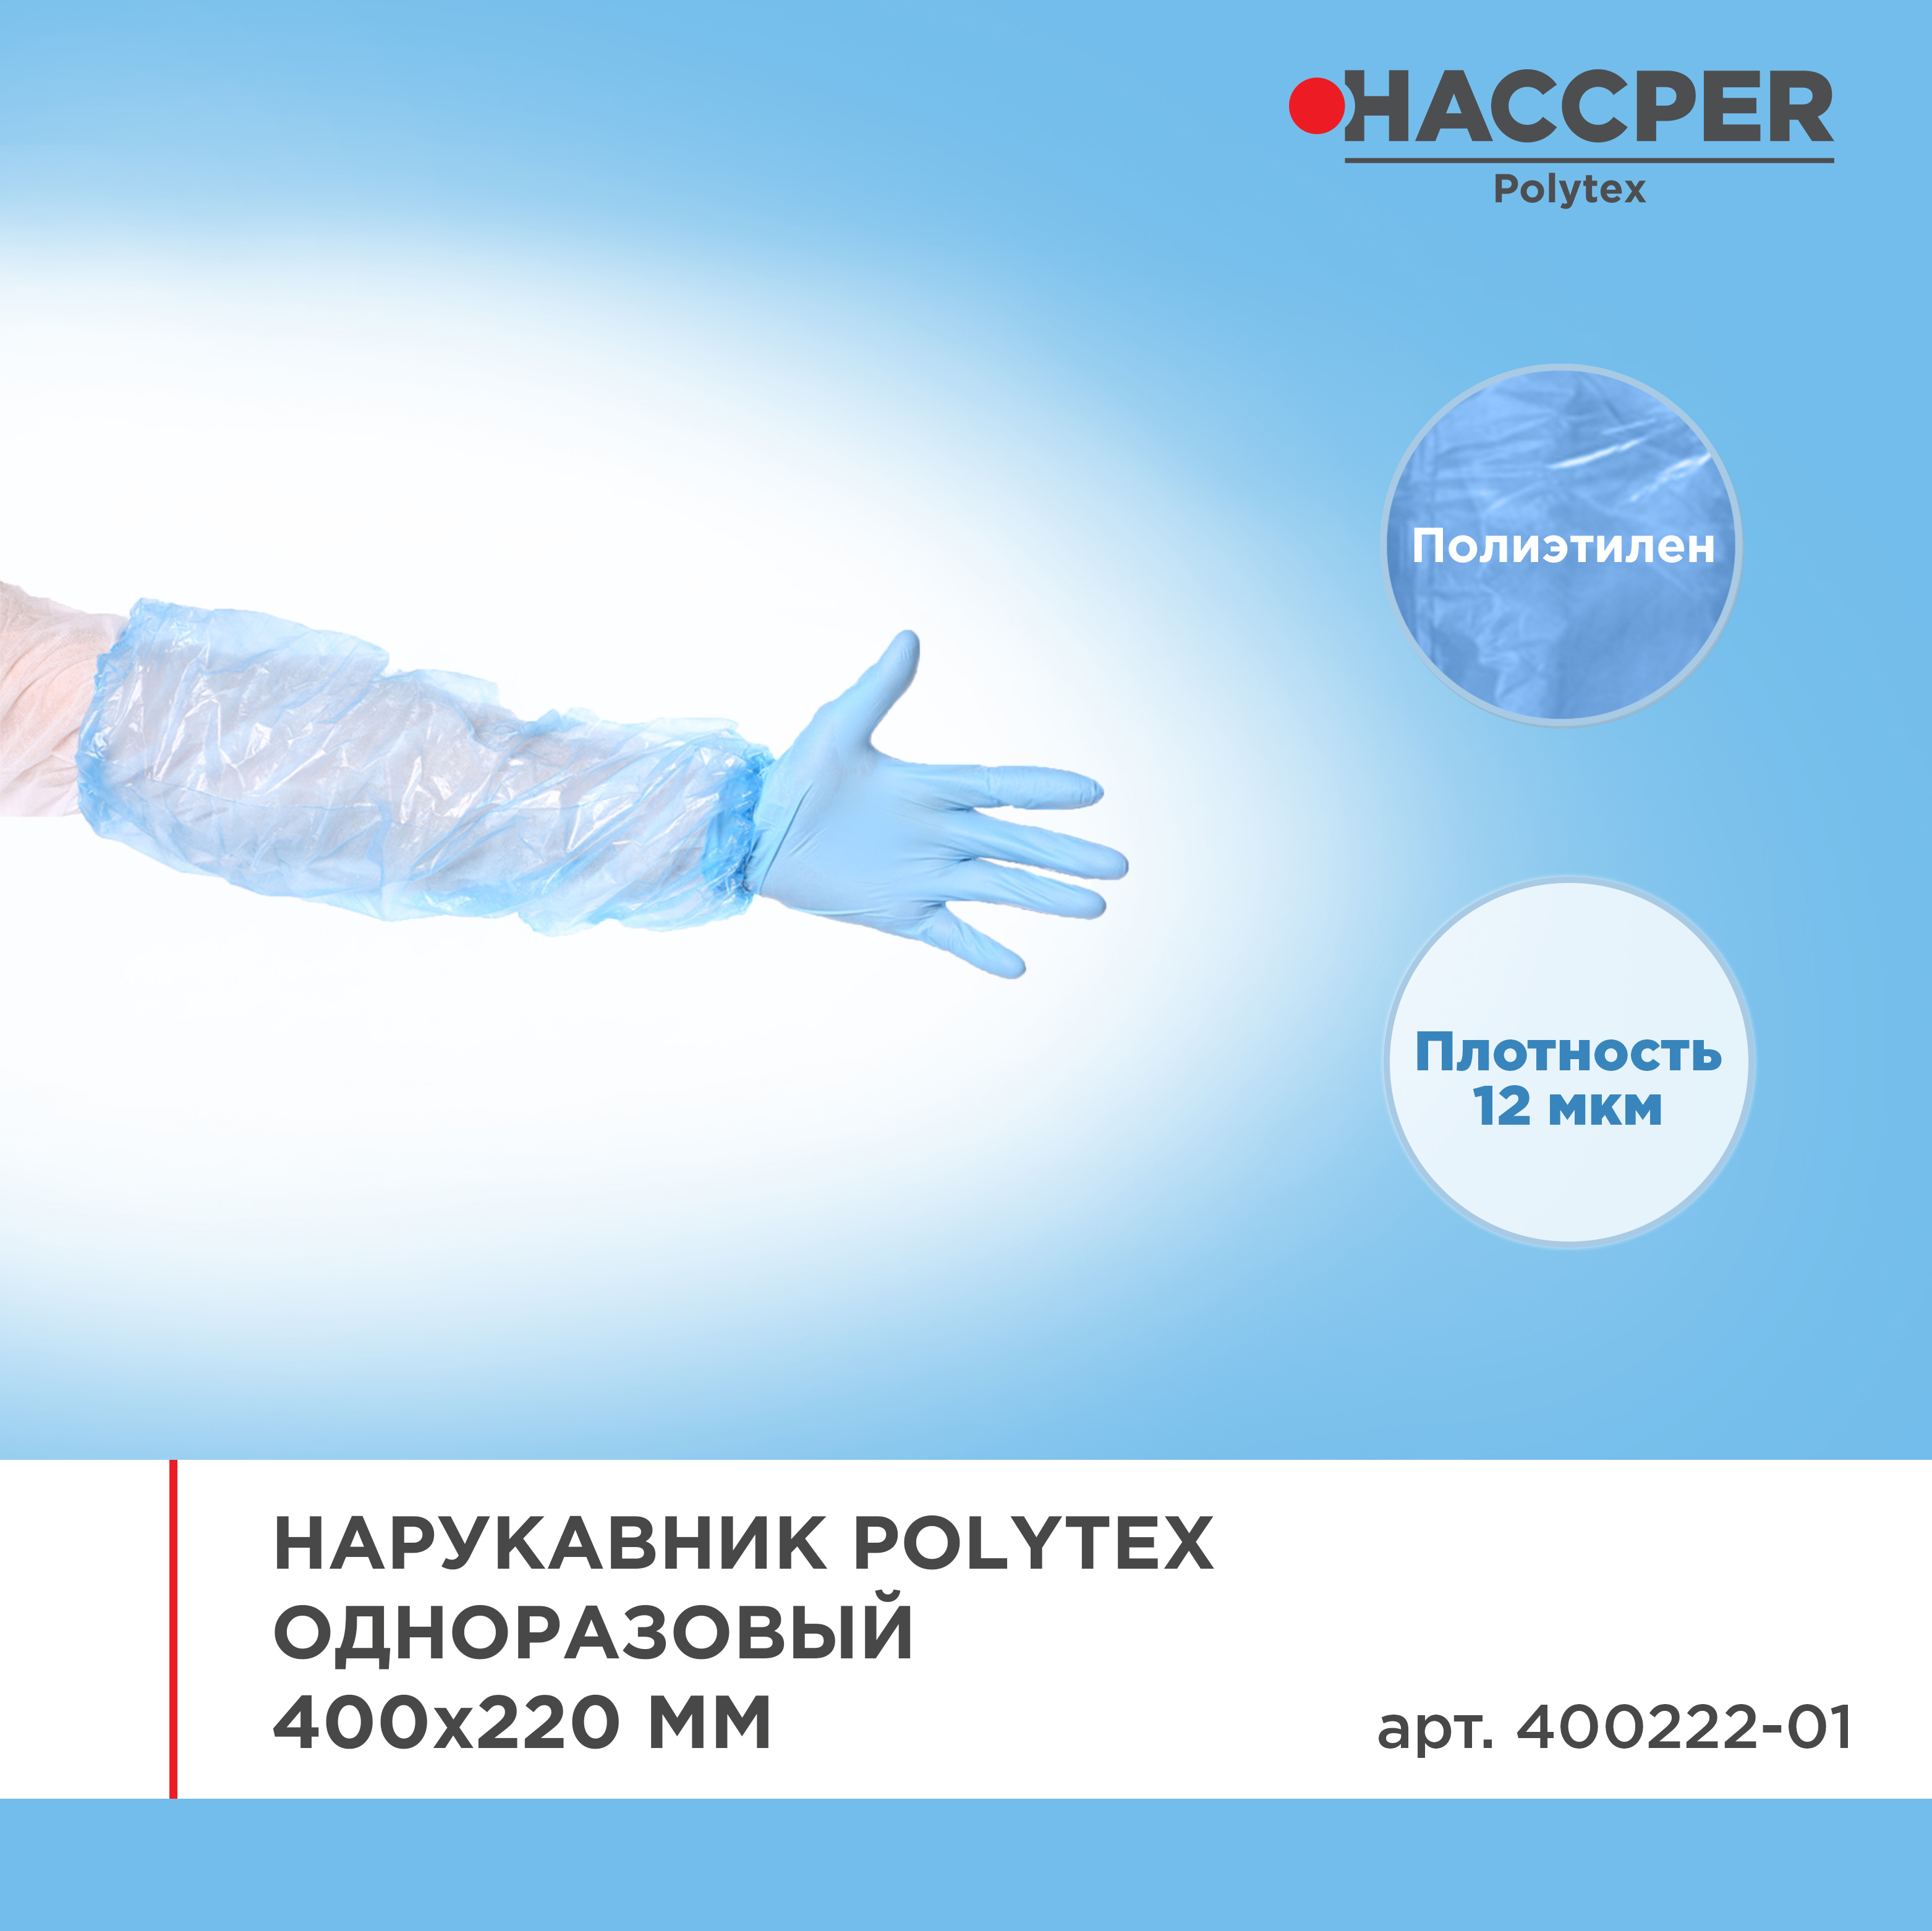 Нарукавник HACCPER Polytex одноразовый, 400x220 мм, 12 мкм, голубой, 2000 шт/кор